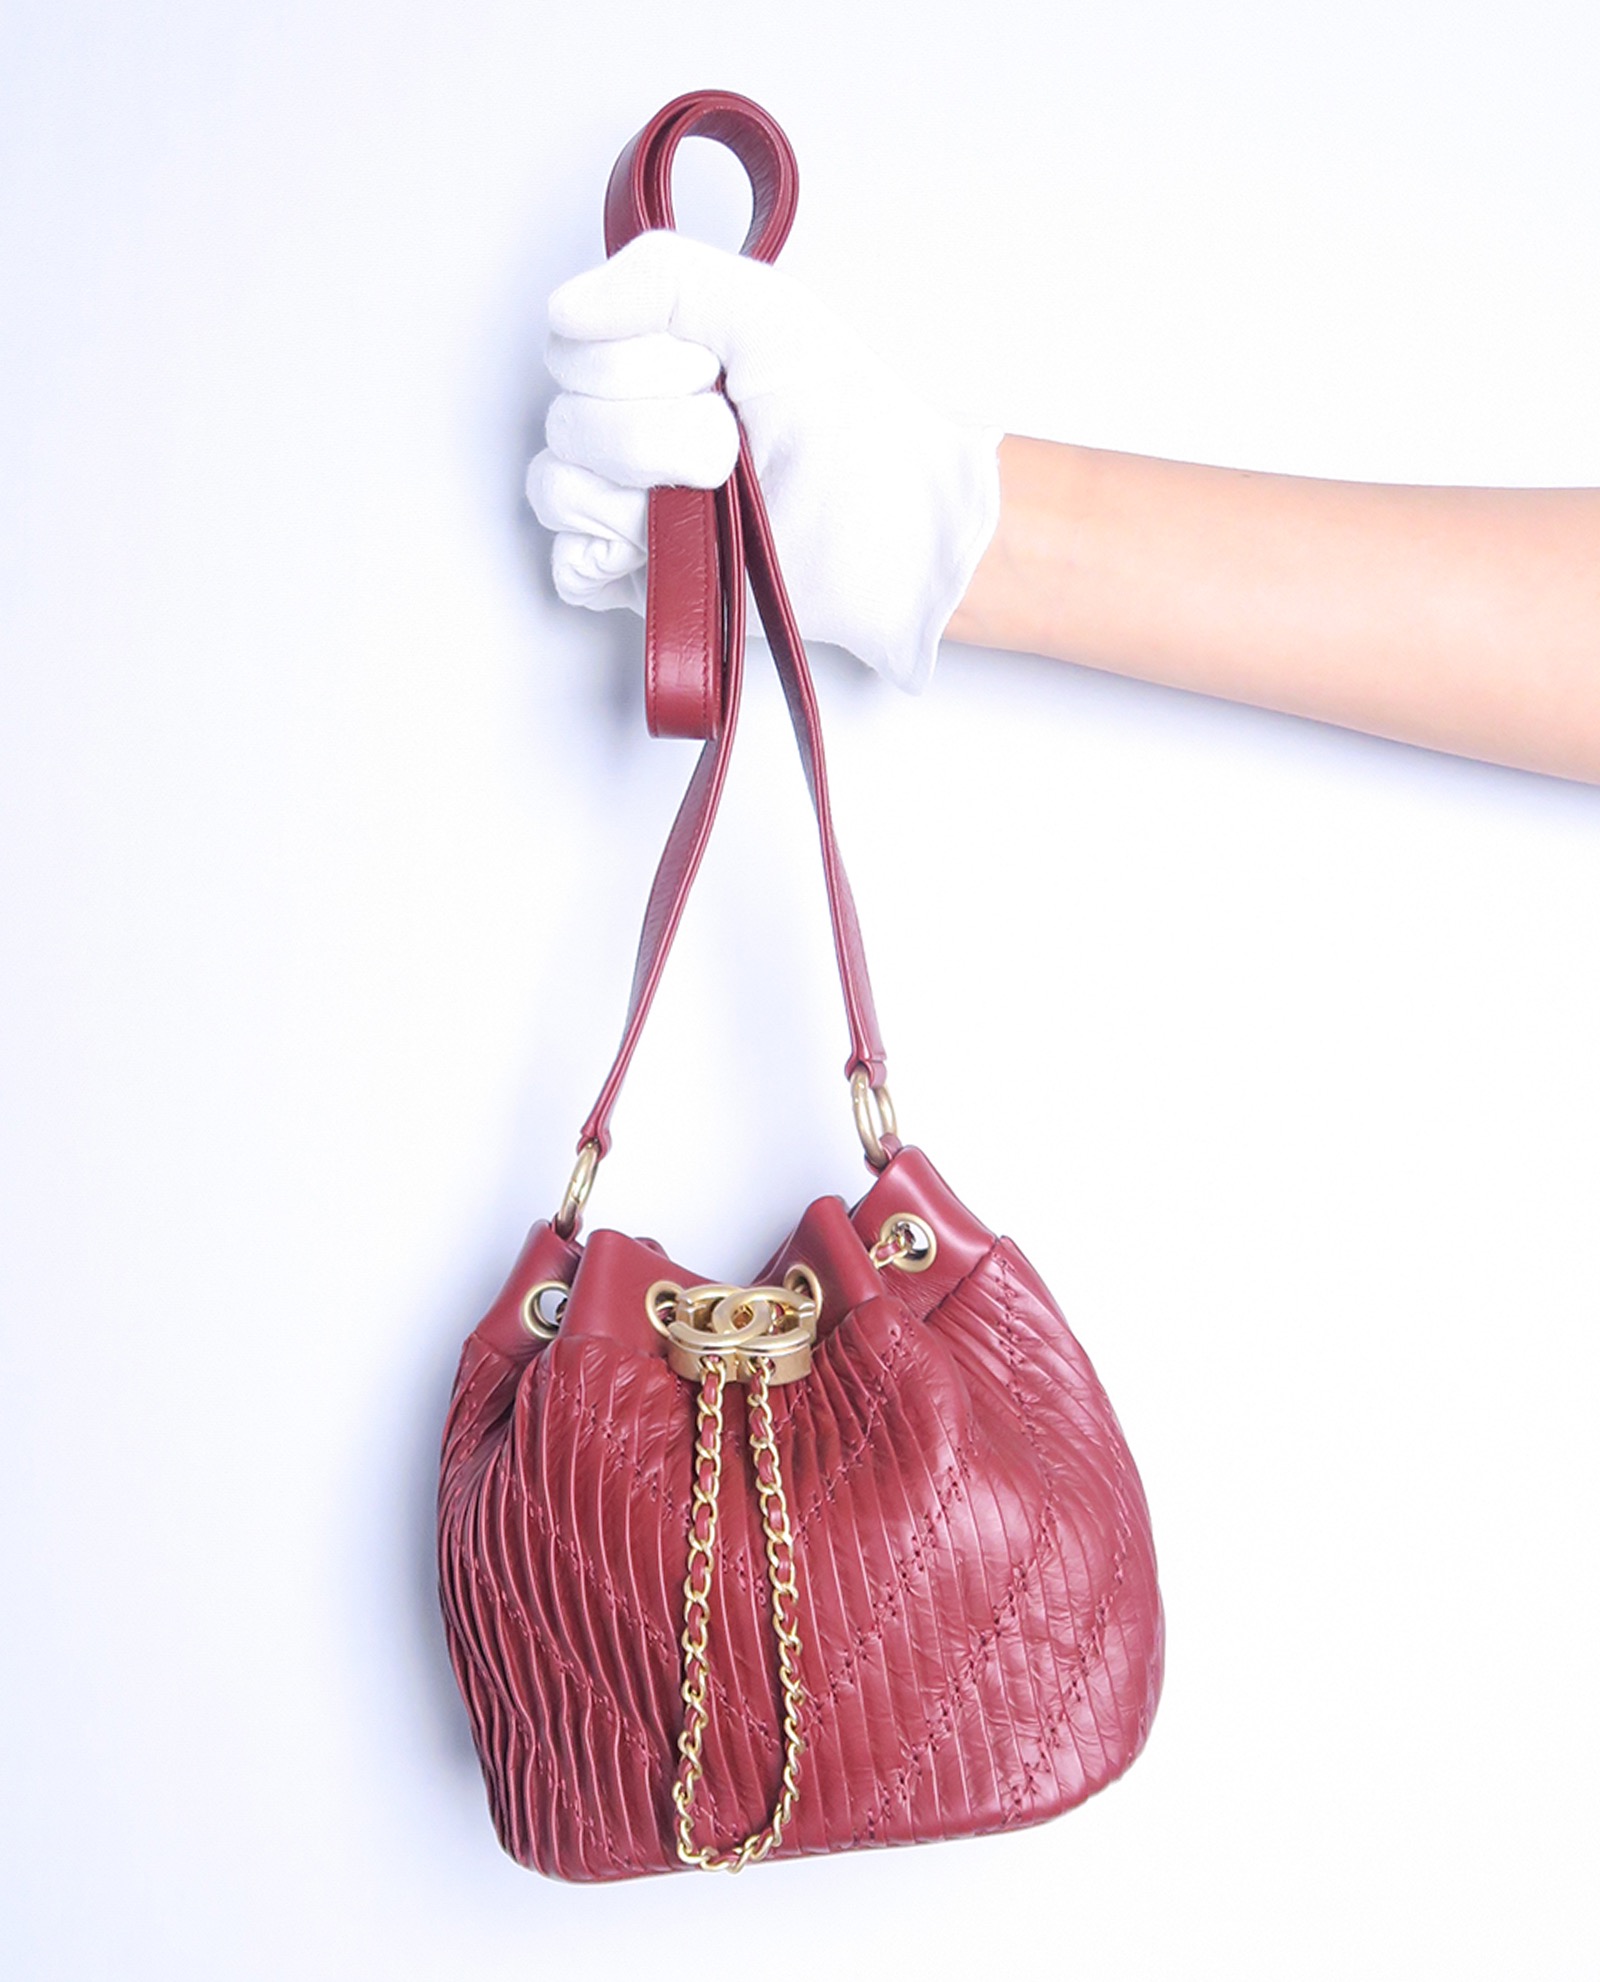 CHANEL Coco Pleated Drawstring Bag Burgundy 2018 Handbag Amazing Runaw –  Afashionistastore